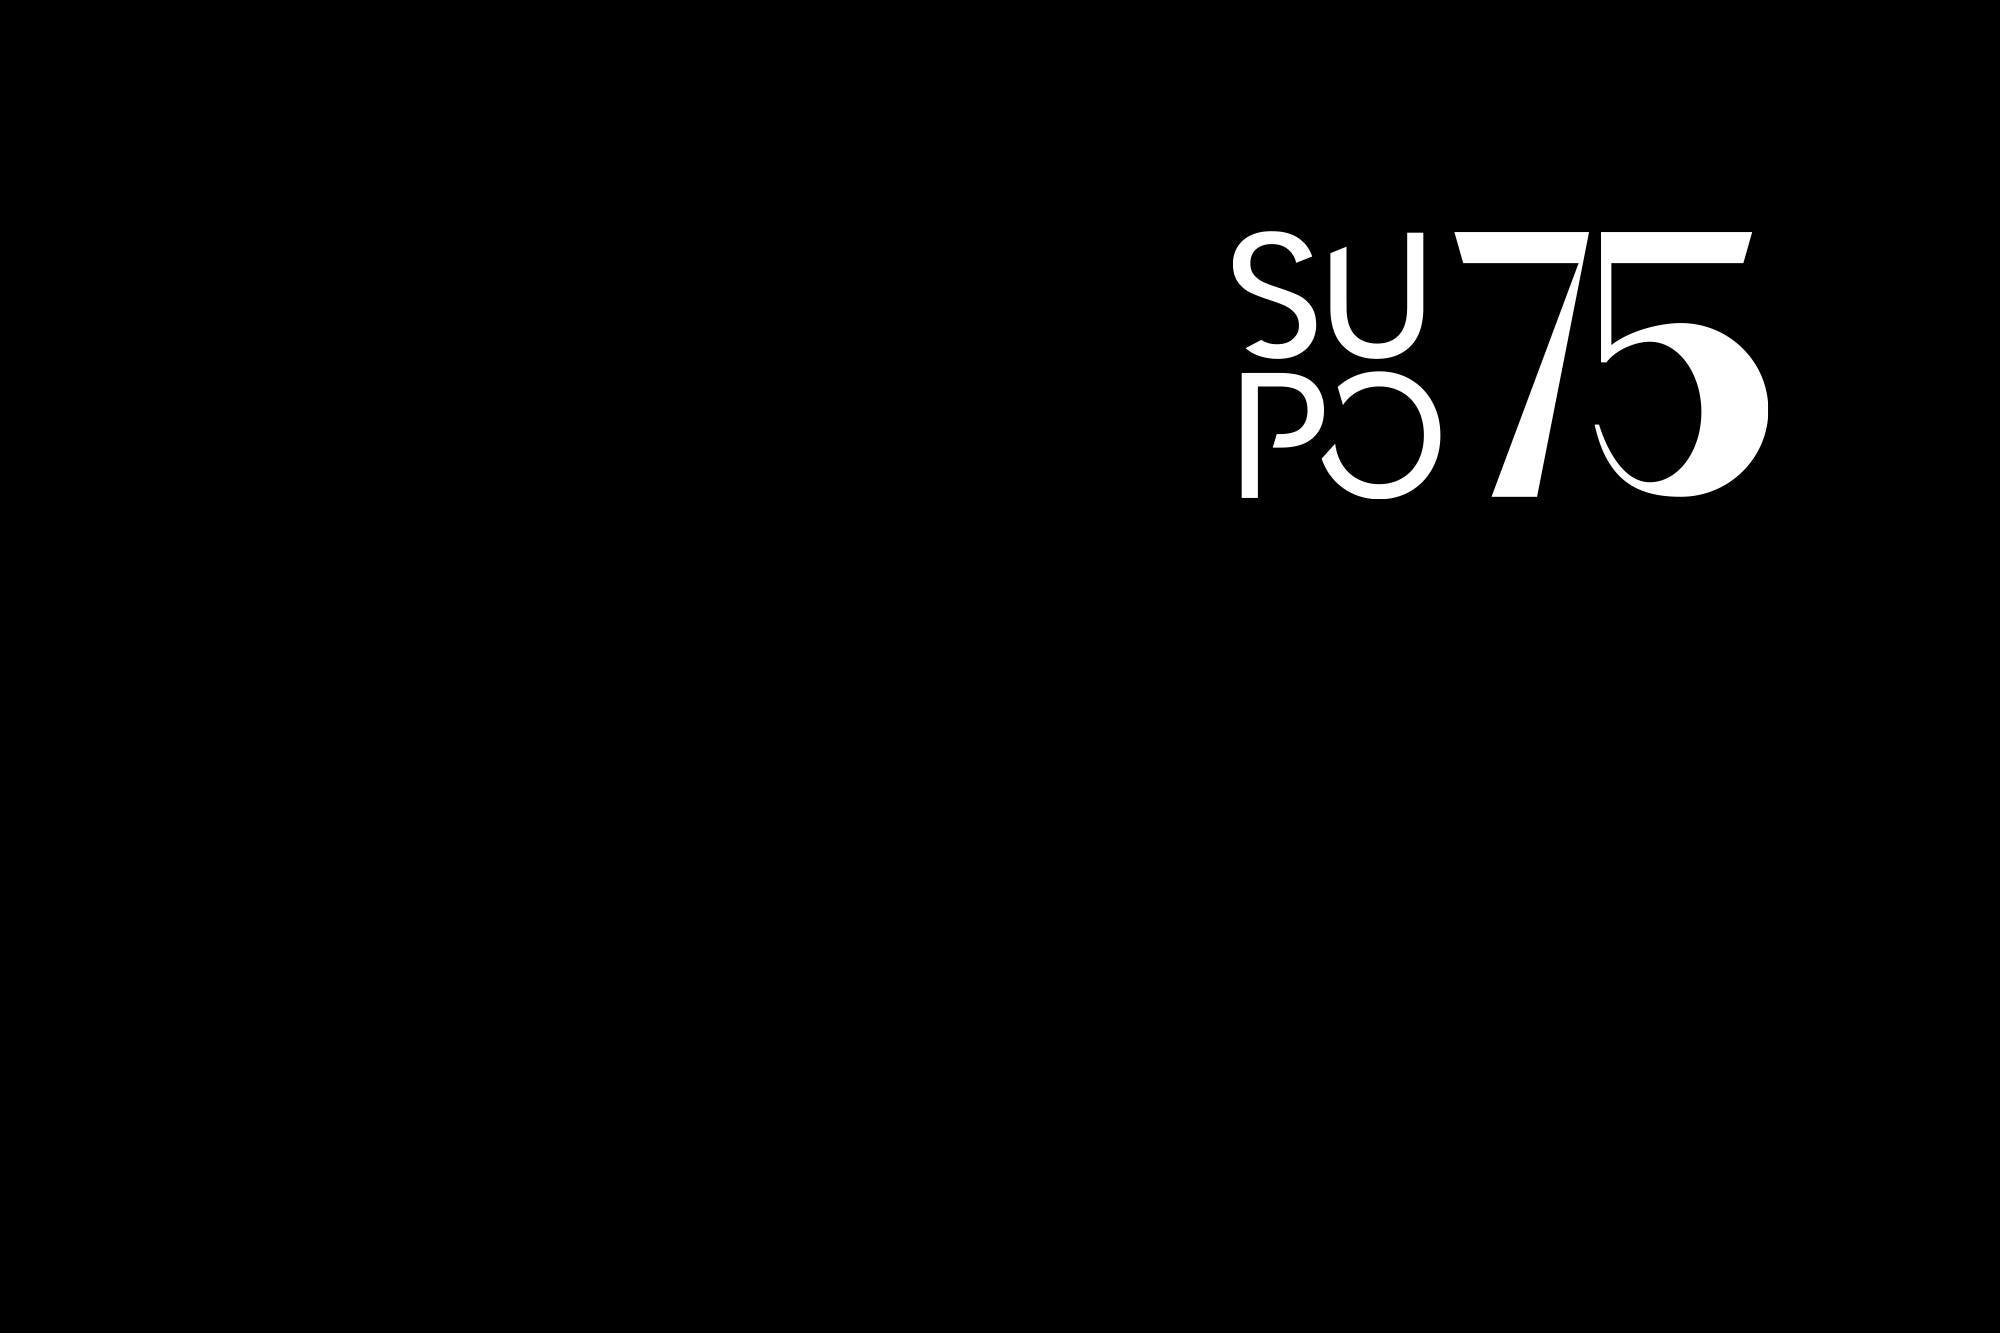 Supo-logo 75 år.